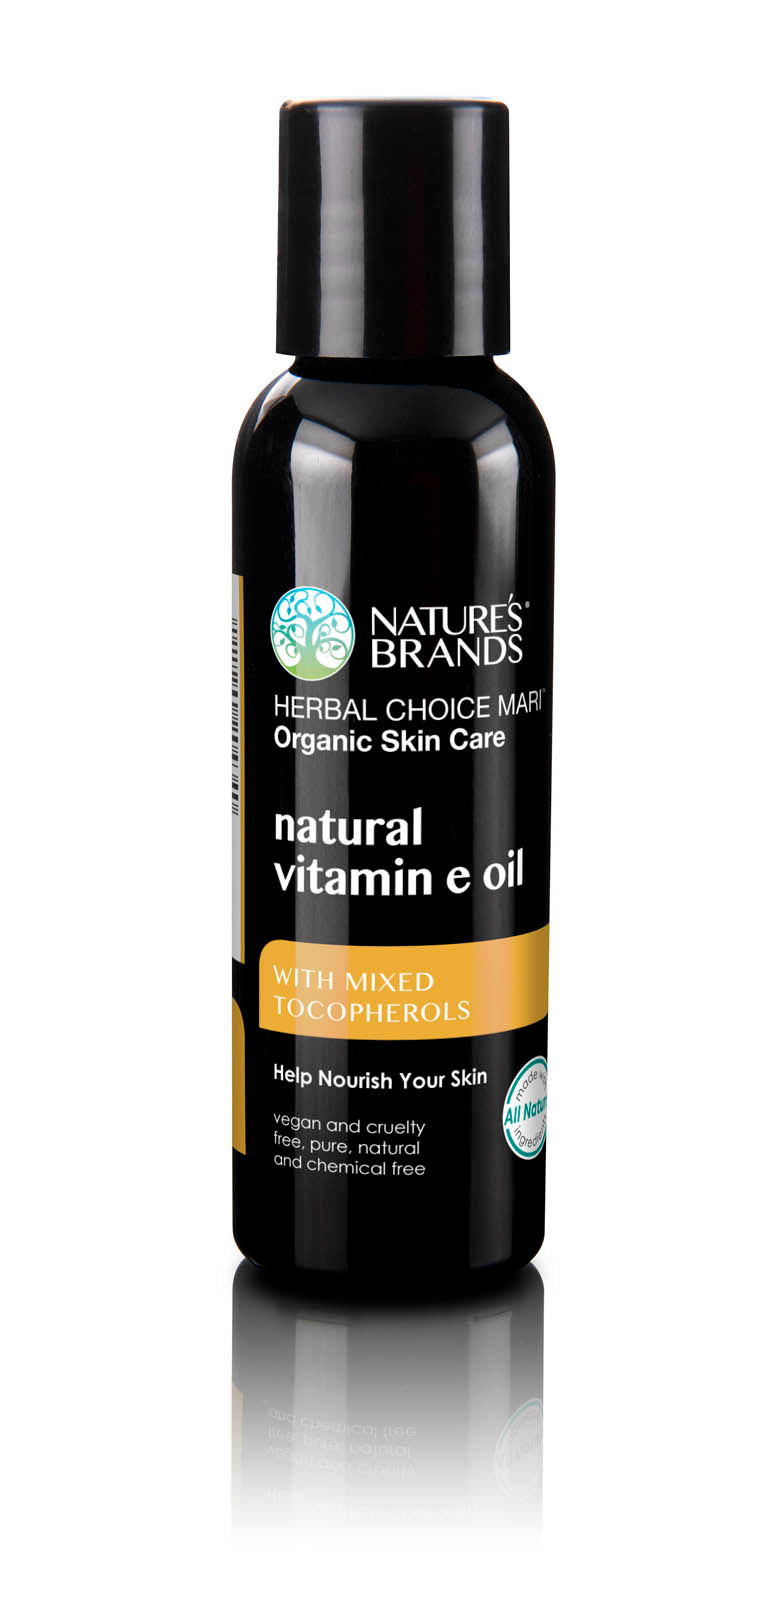 Herbal Choice Mari Natural Vitamin E Oil - Herbal Choice Mari Natural Vitamin E Oil - Herbal Choice Mari Natural Vitamin E Oil